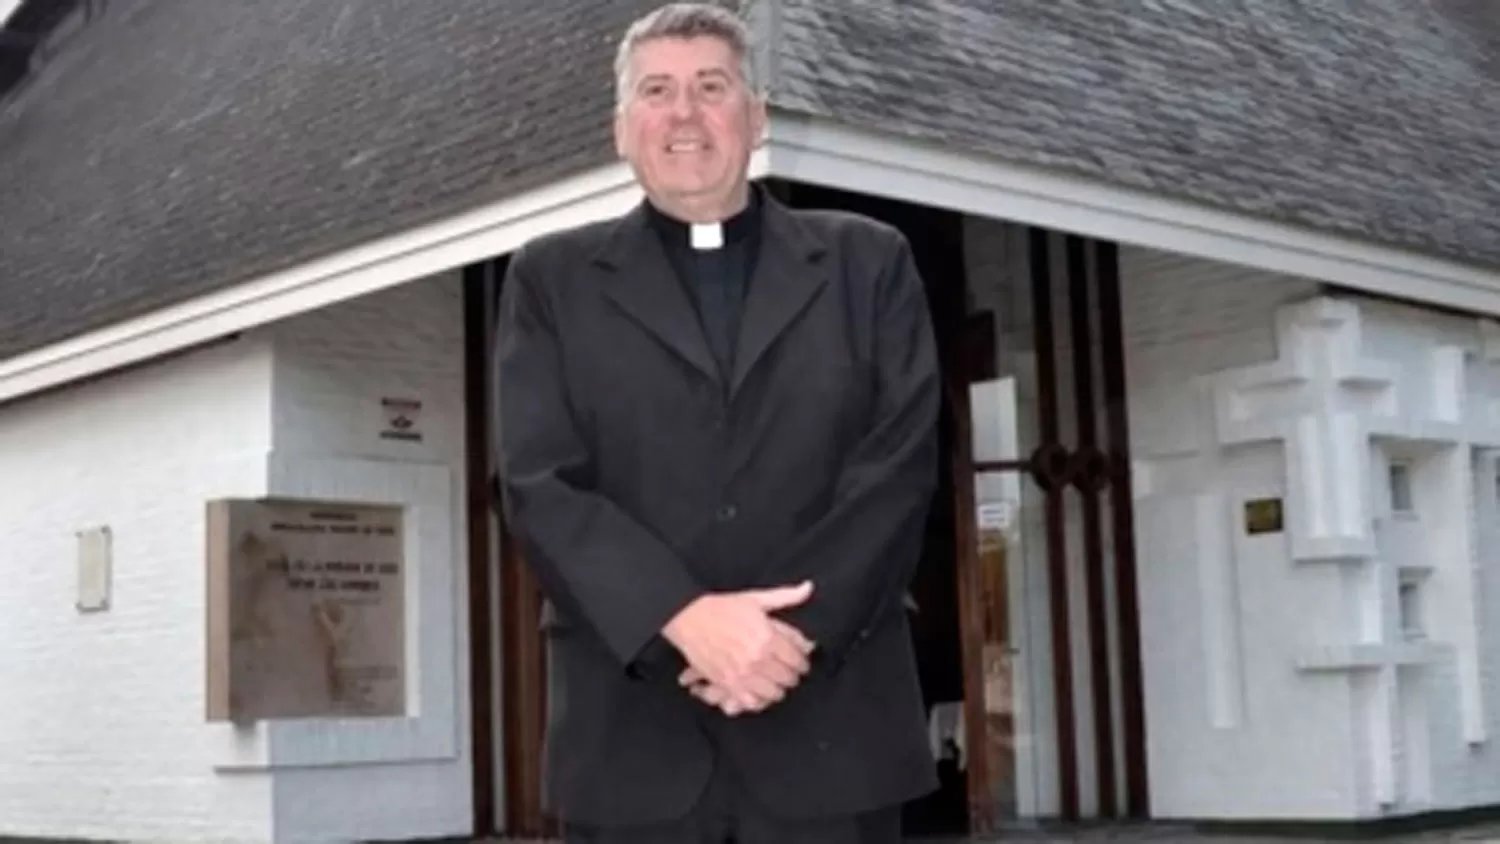 La muerte no repara el daño, dicen víctimas de abuso del sacerdote Lorenzo